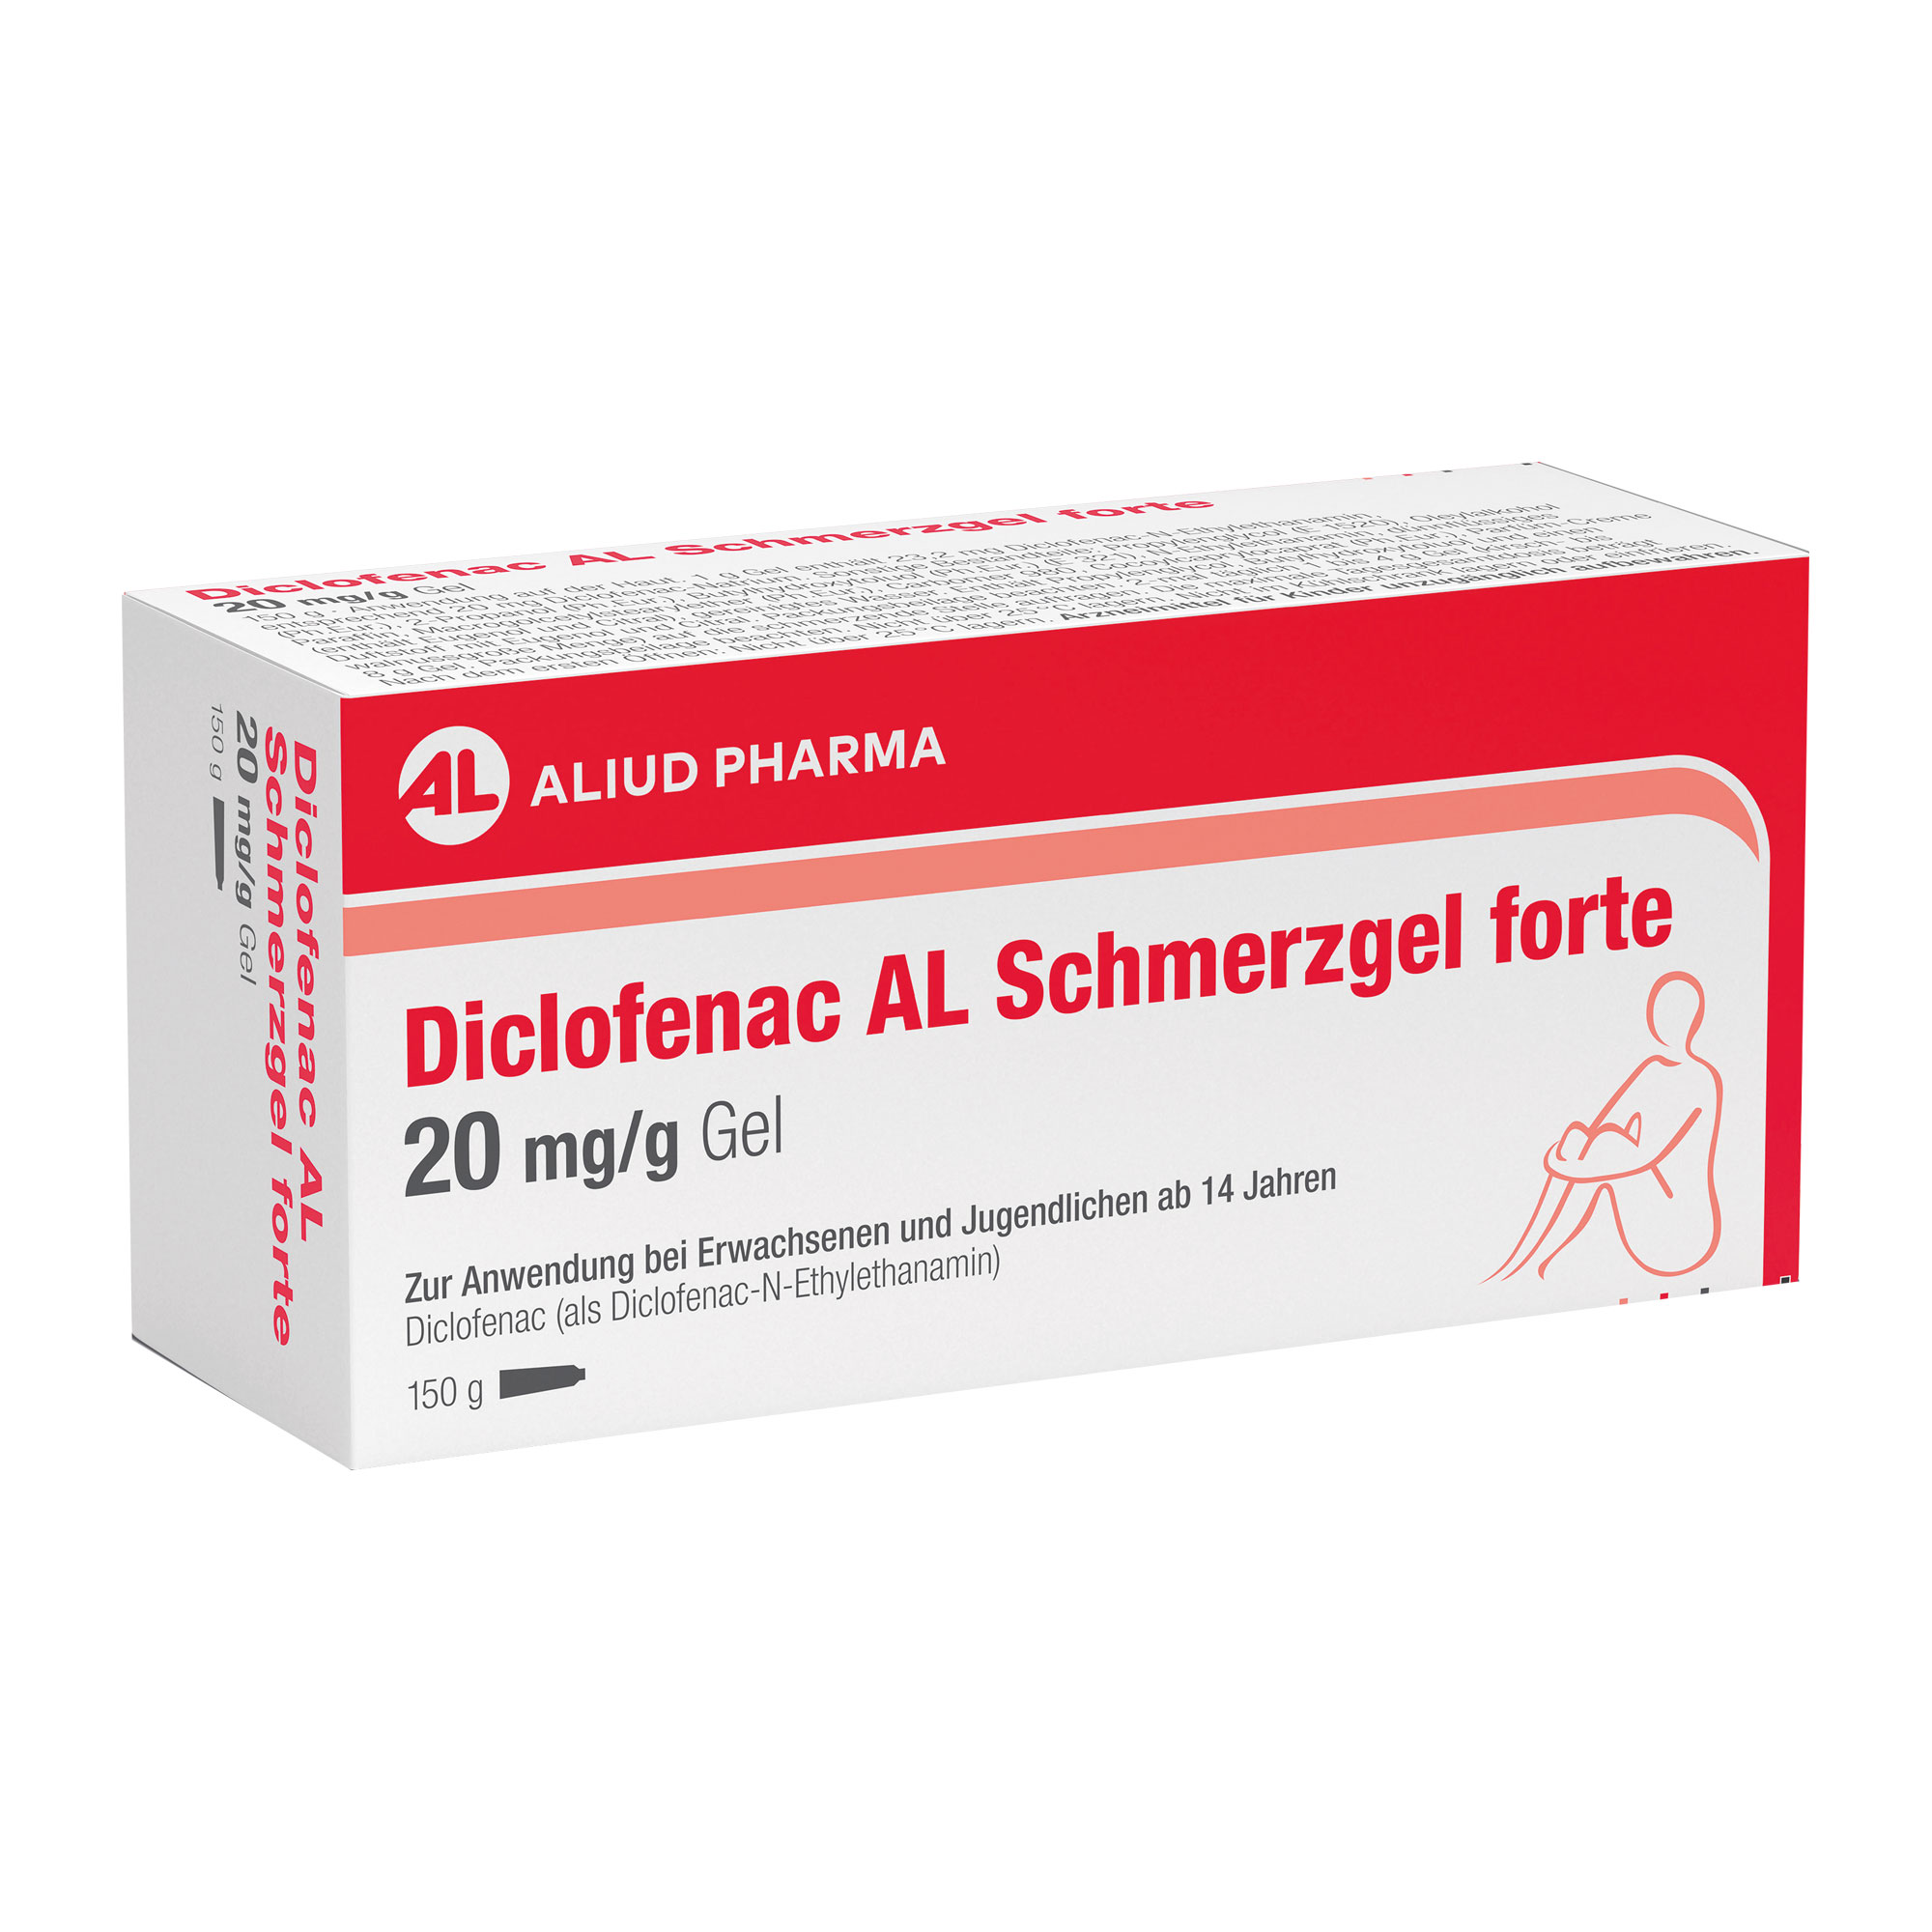 Ein Schmerzgel mit dem Wirkstoff Diclofenac zur äußerlichen Anwendung bei stumpfen Traumata oder Muskel- oder Gelenkschmerzen.